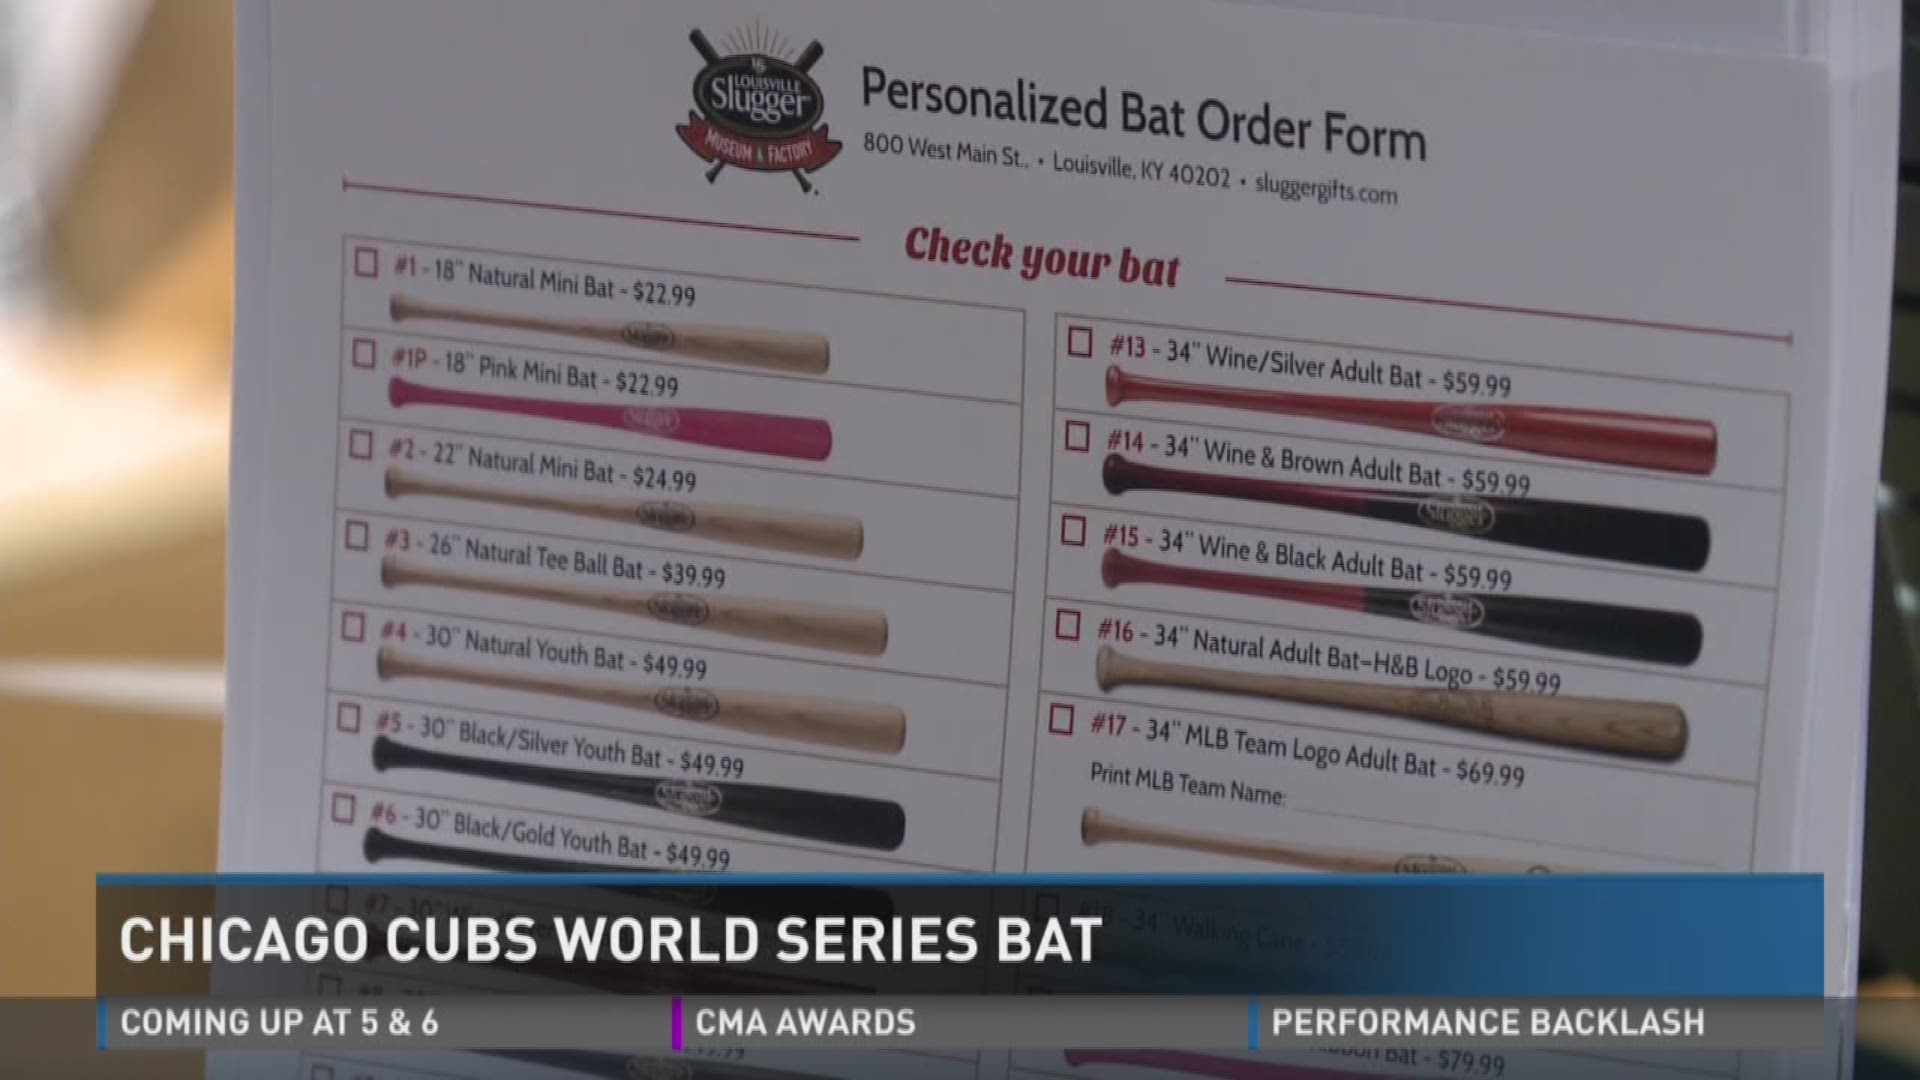 Louisville Slugger designing keepsakes for Cubs fans after World